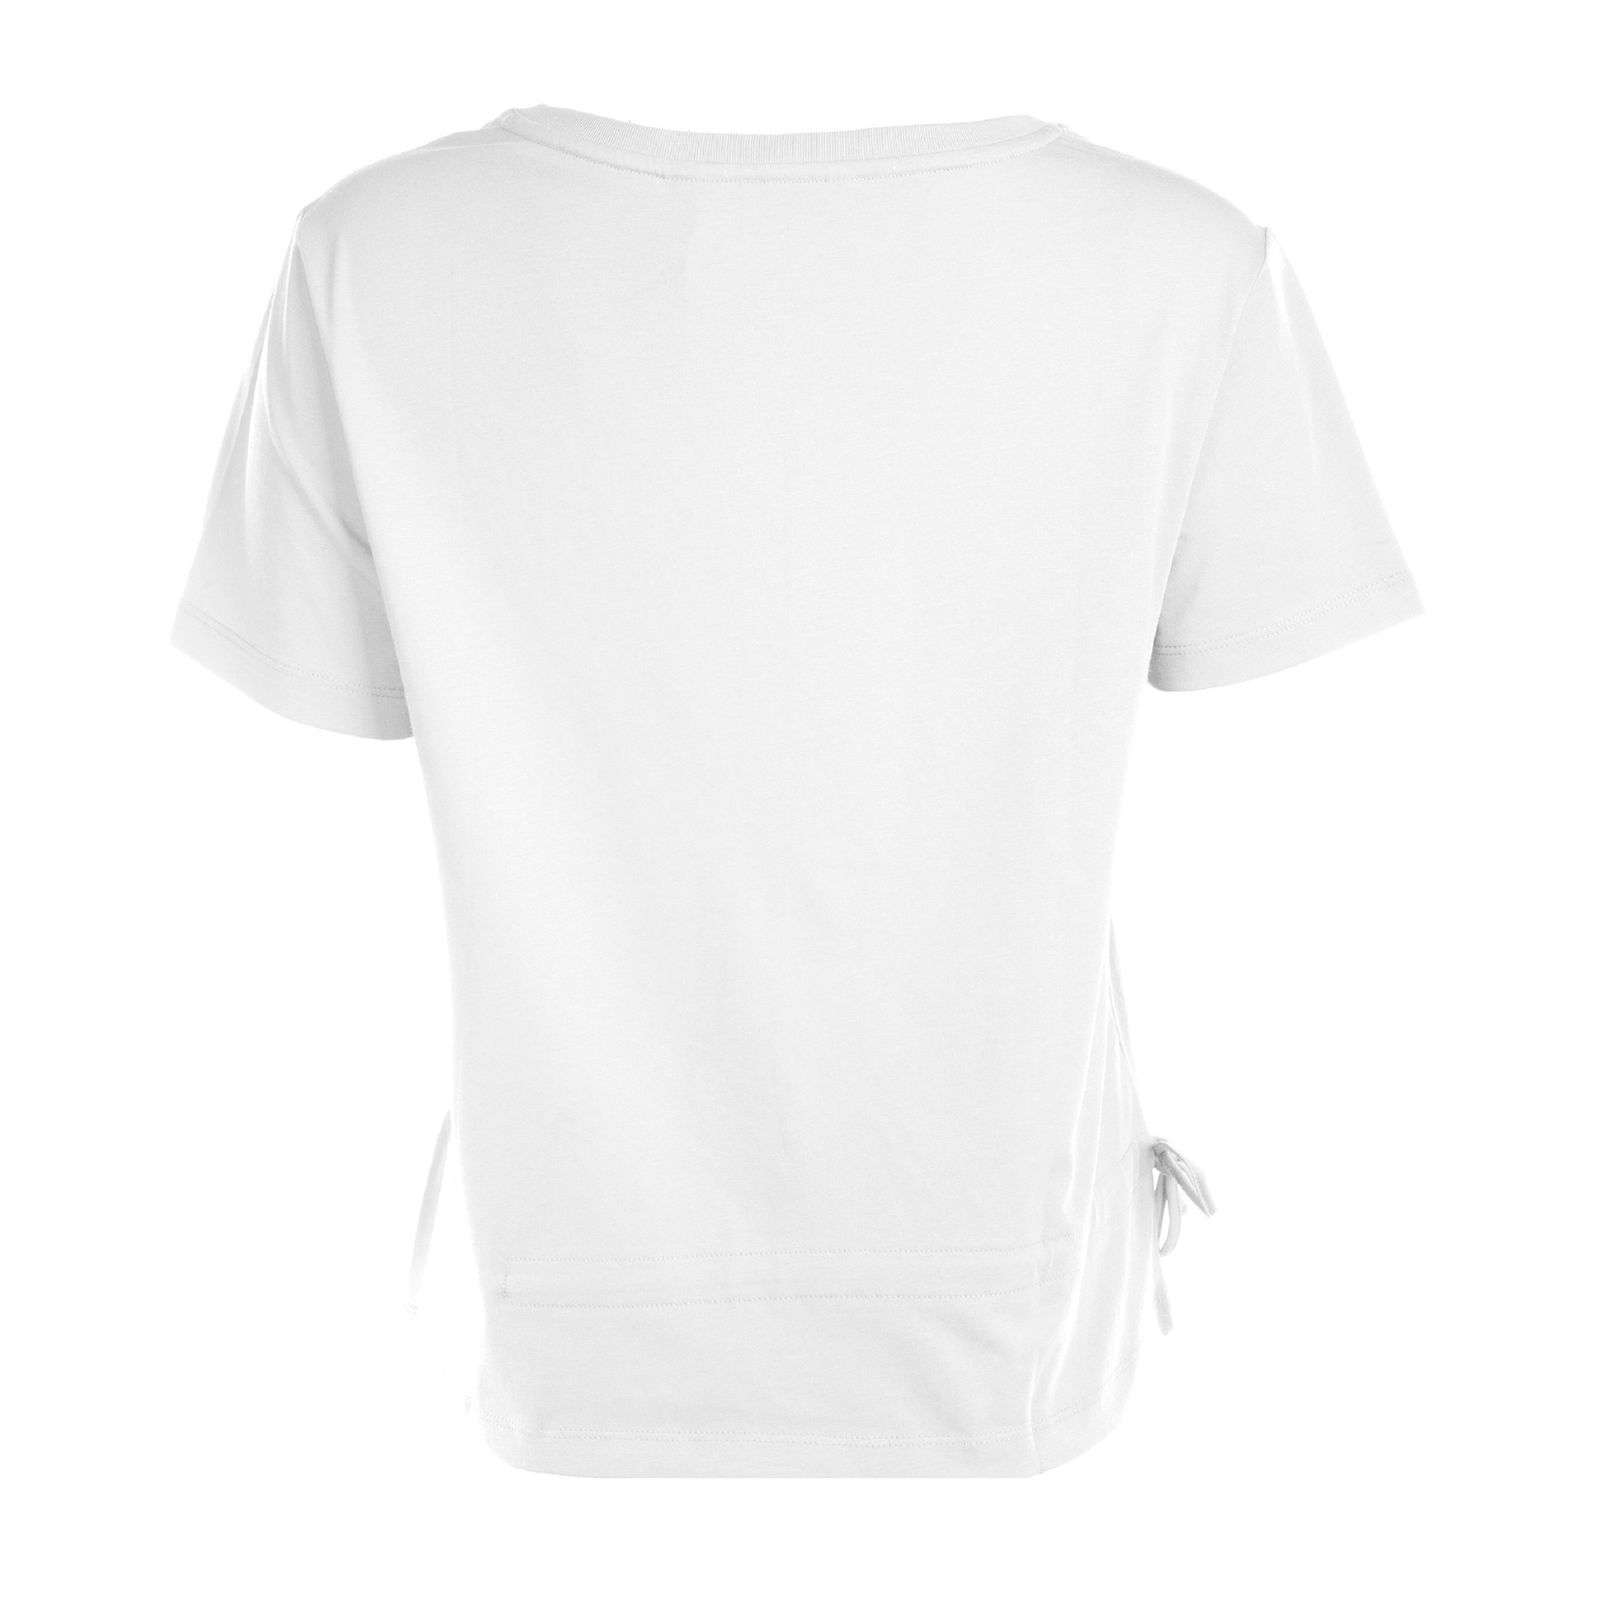 تی شرت آستین کوتاه زنانه جین وست مدل یقه گرد کد 1551351 رنگ سفید -  - 2